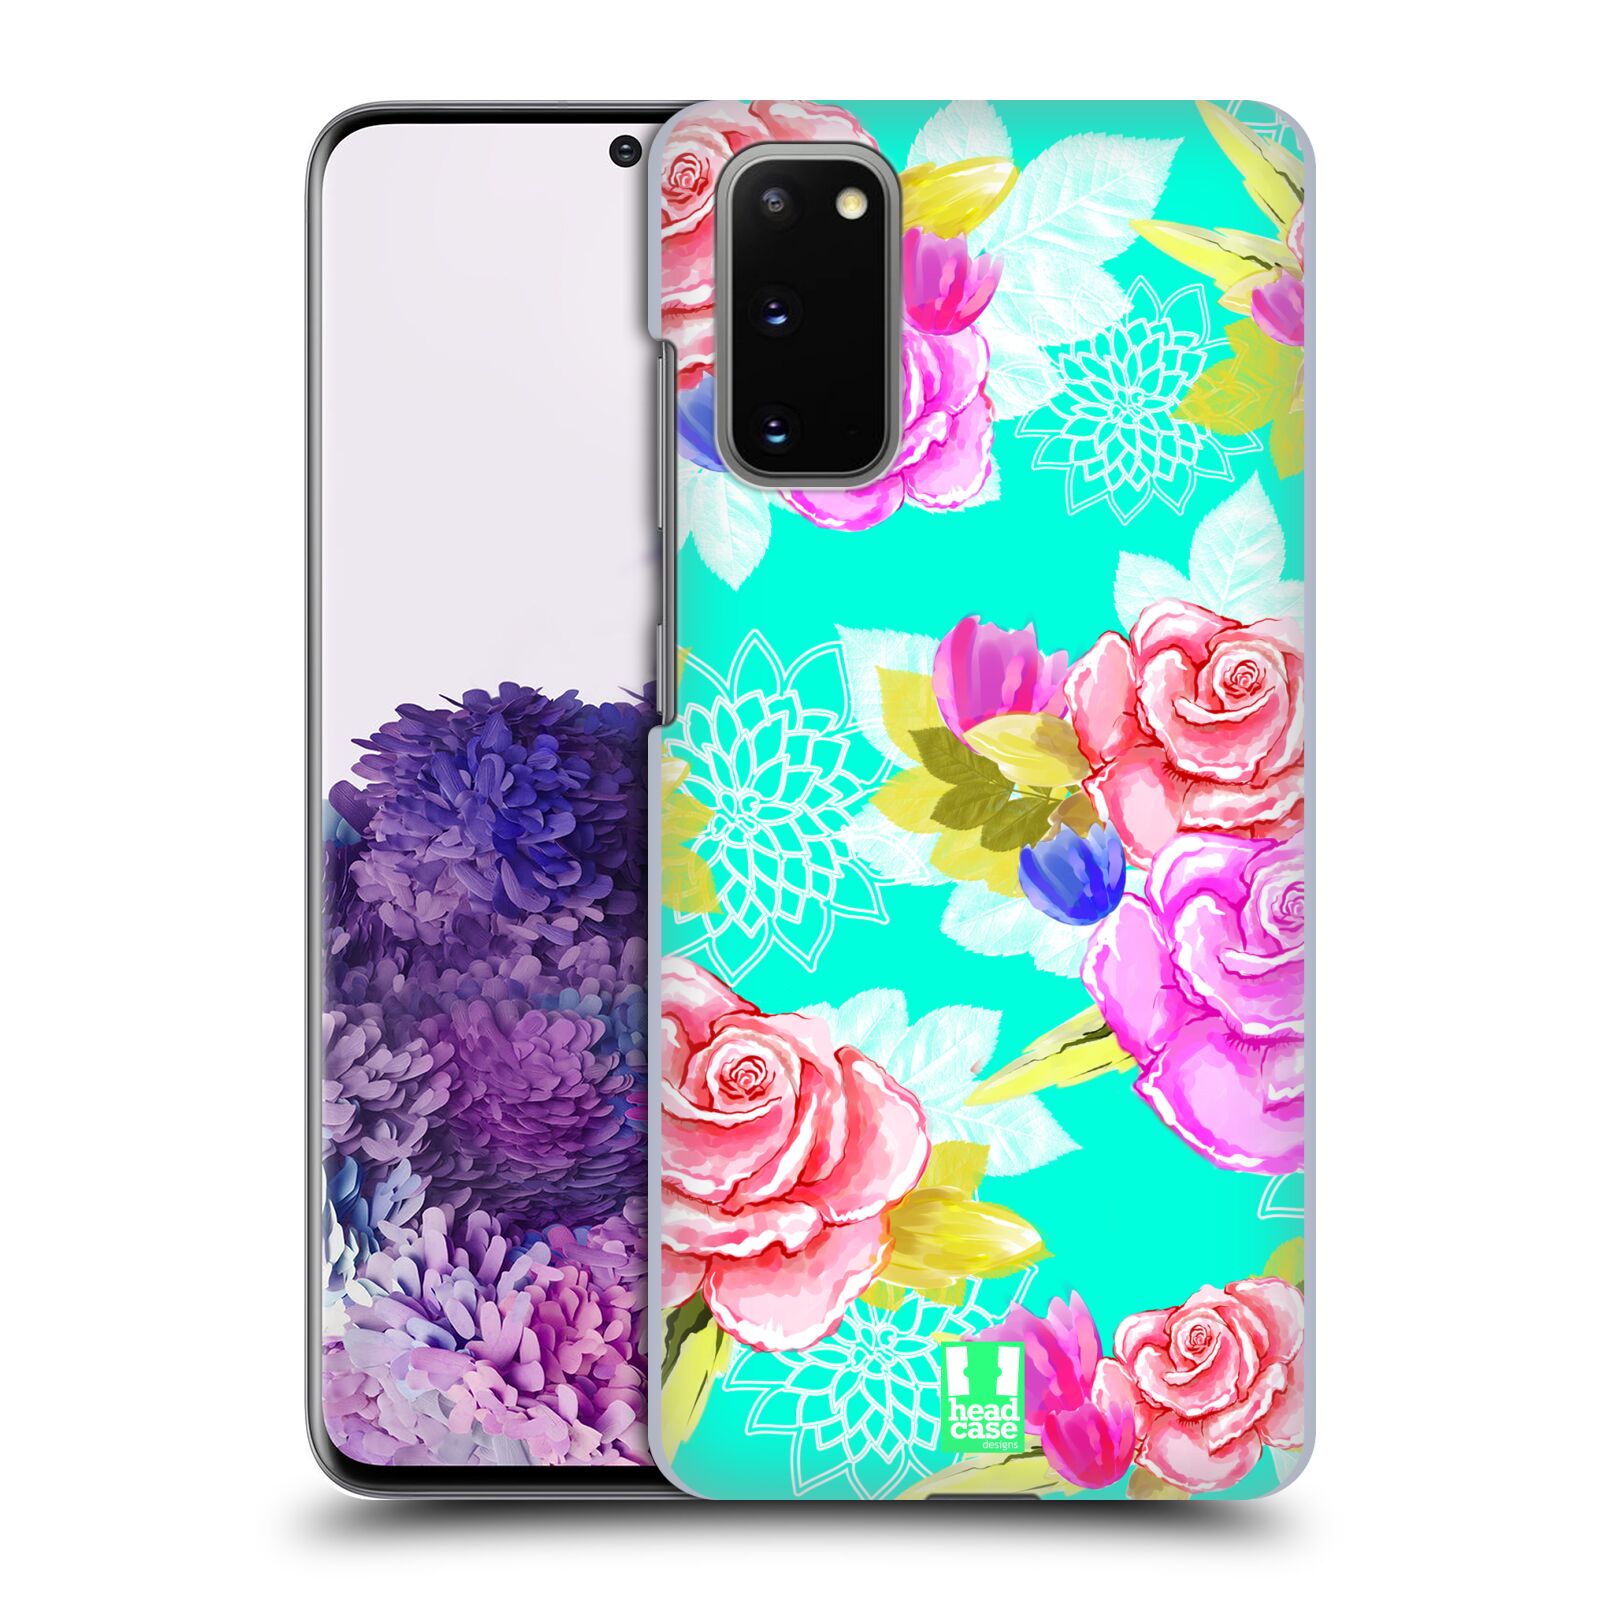 Pouzdro na mobil Samsung Galaxy S20 - HEAD CASE - vzor Malované květiny barevné AQUA MODRÁ